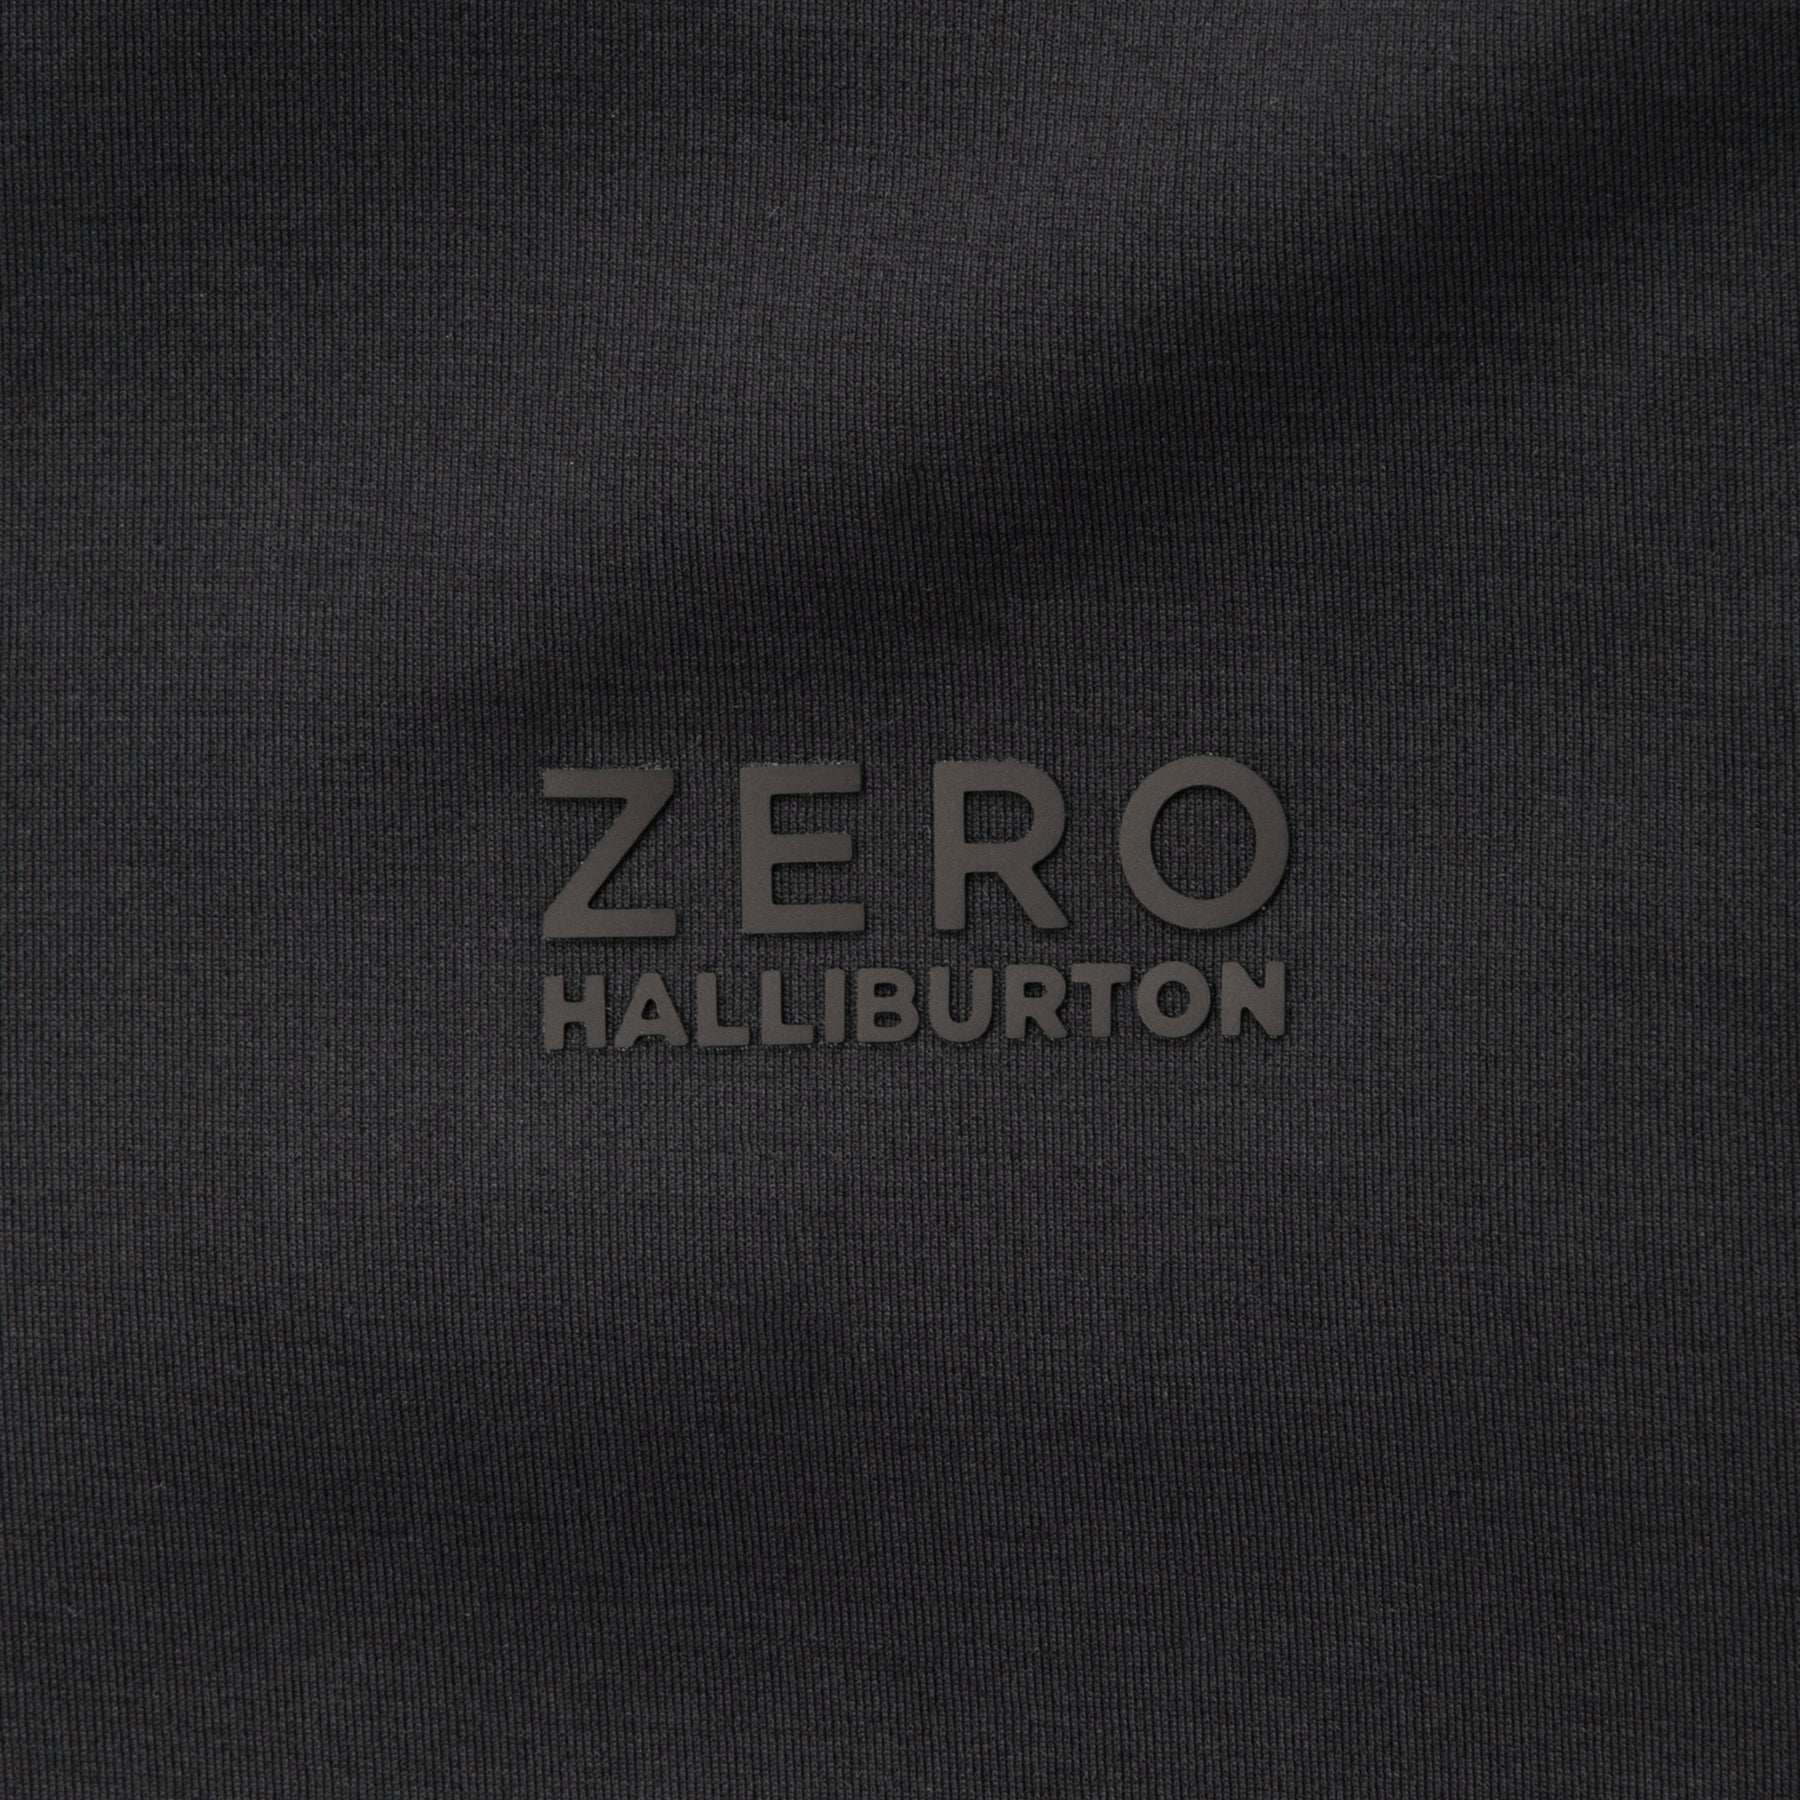 ゼロハリバートン ZERO HALLIBURTON ジャージシリーズ フーディ82151